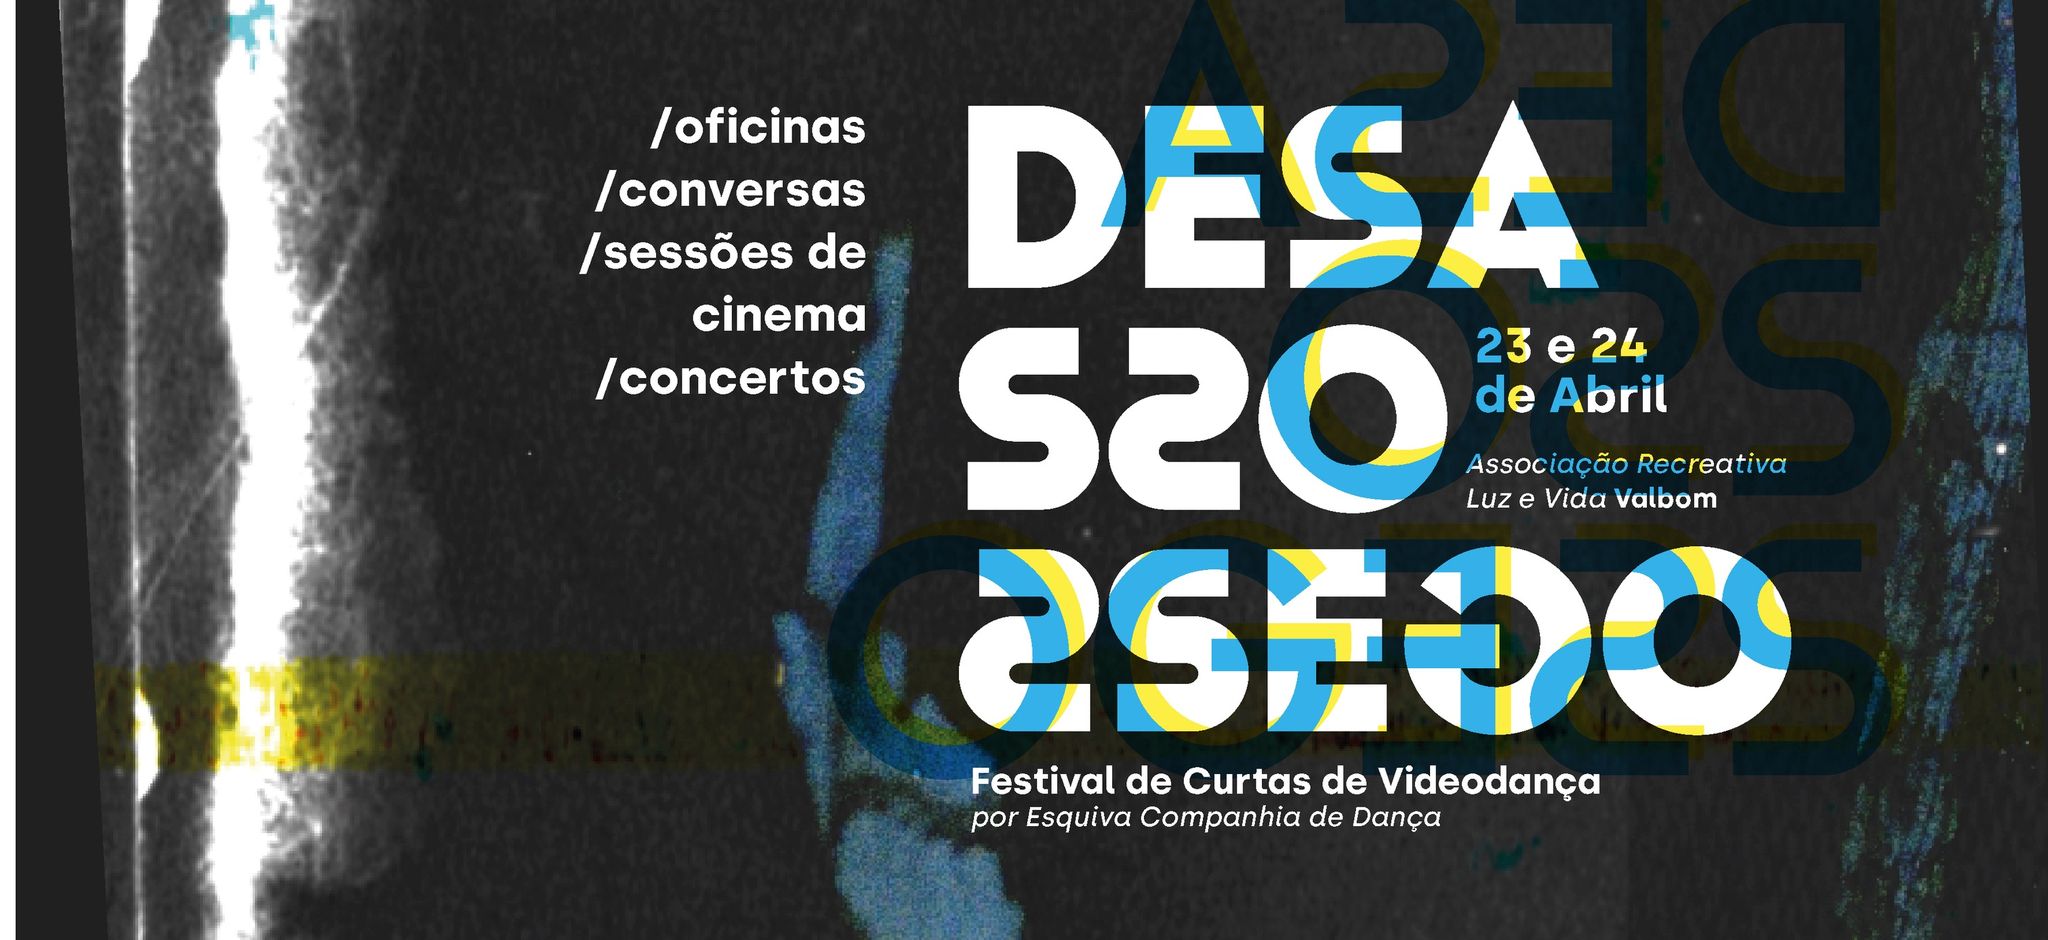 Desassossego Festival de Curtas de Videodança